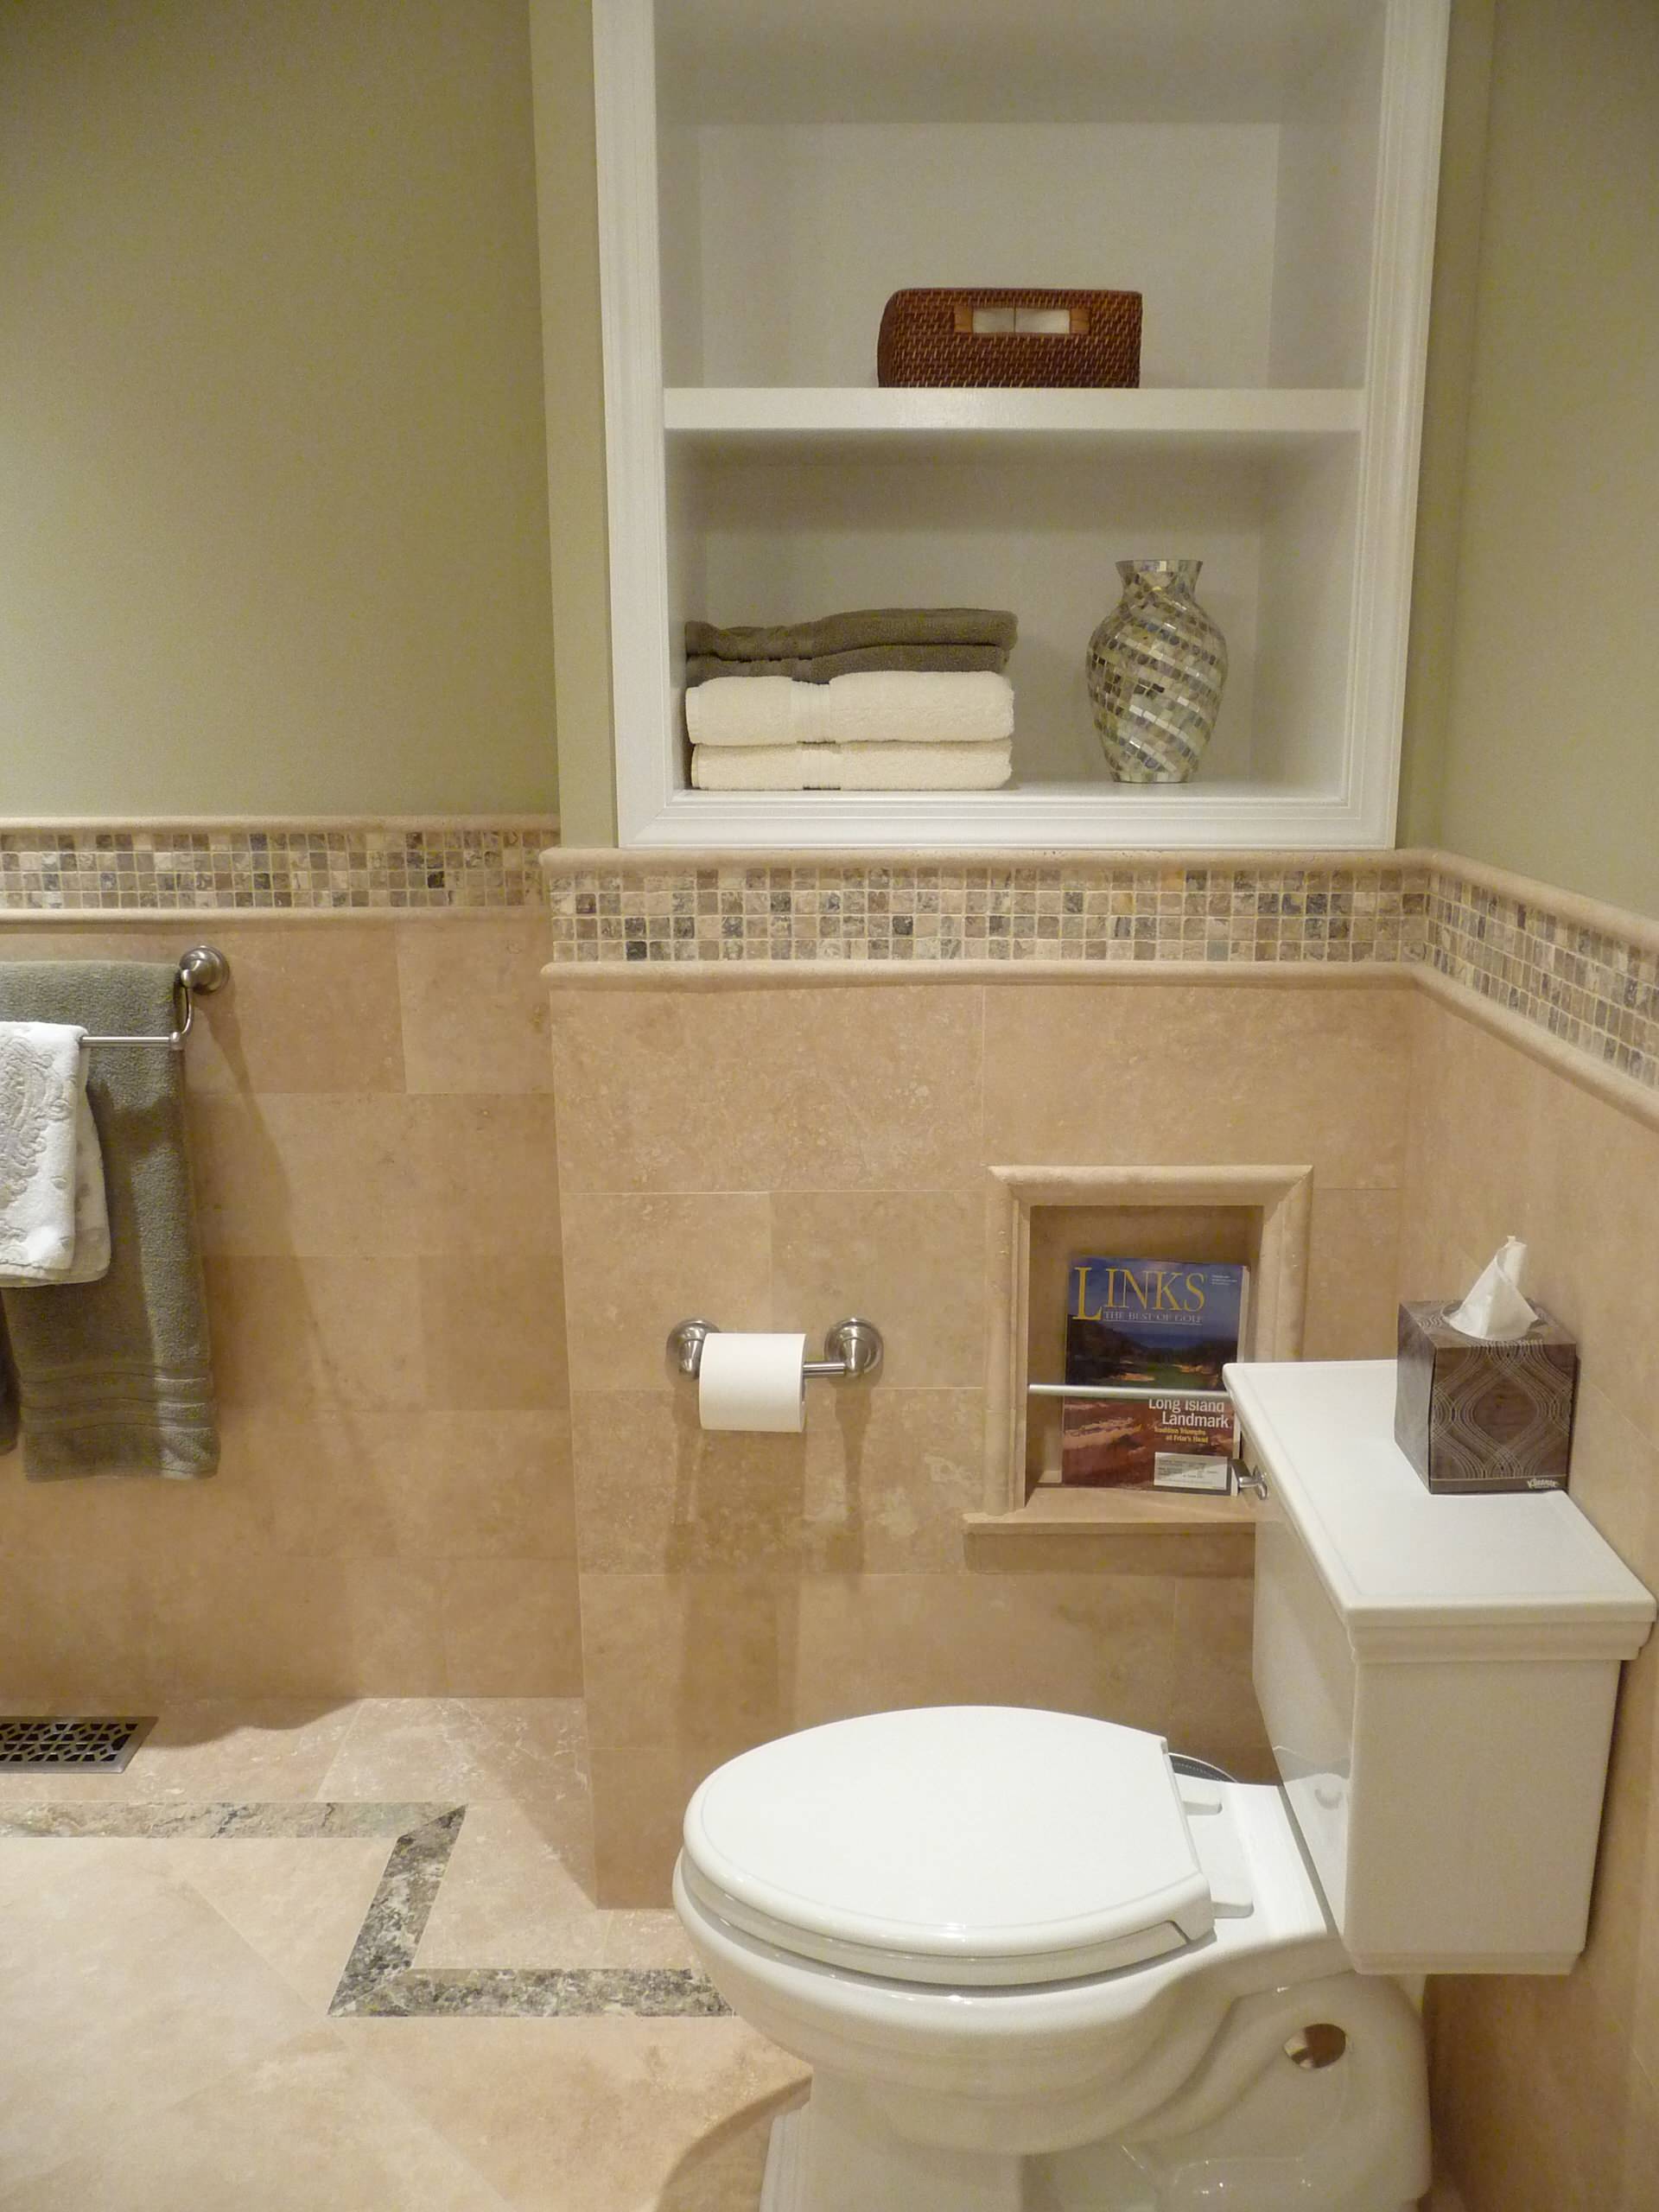 Ванная комната с декоративной штукатуркой и плиткой фото